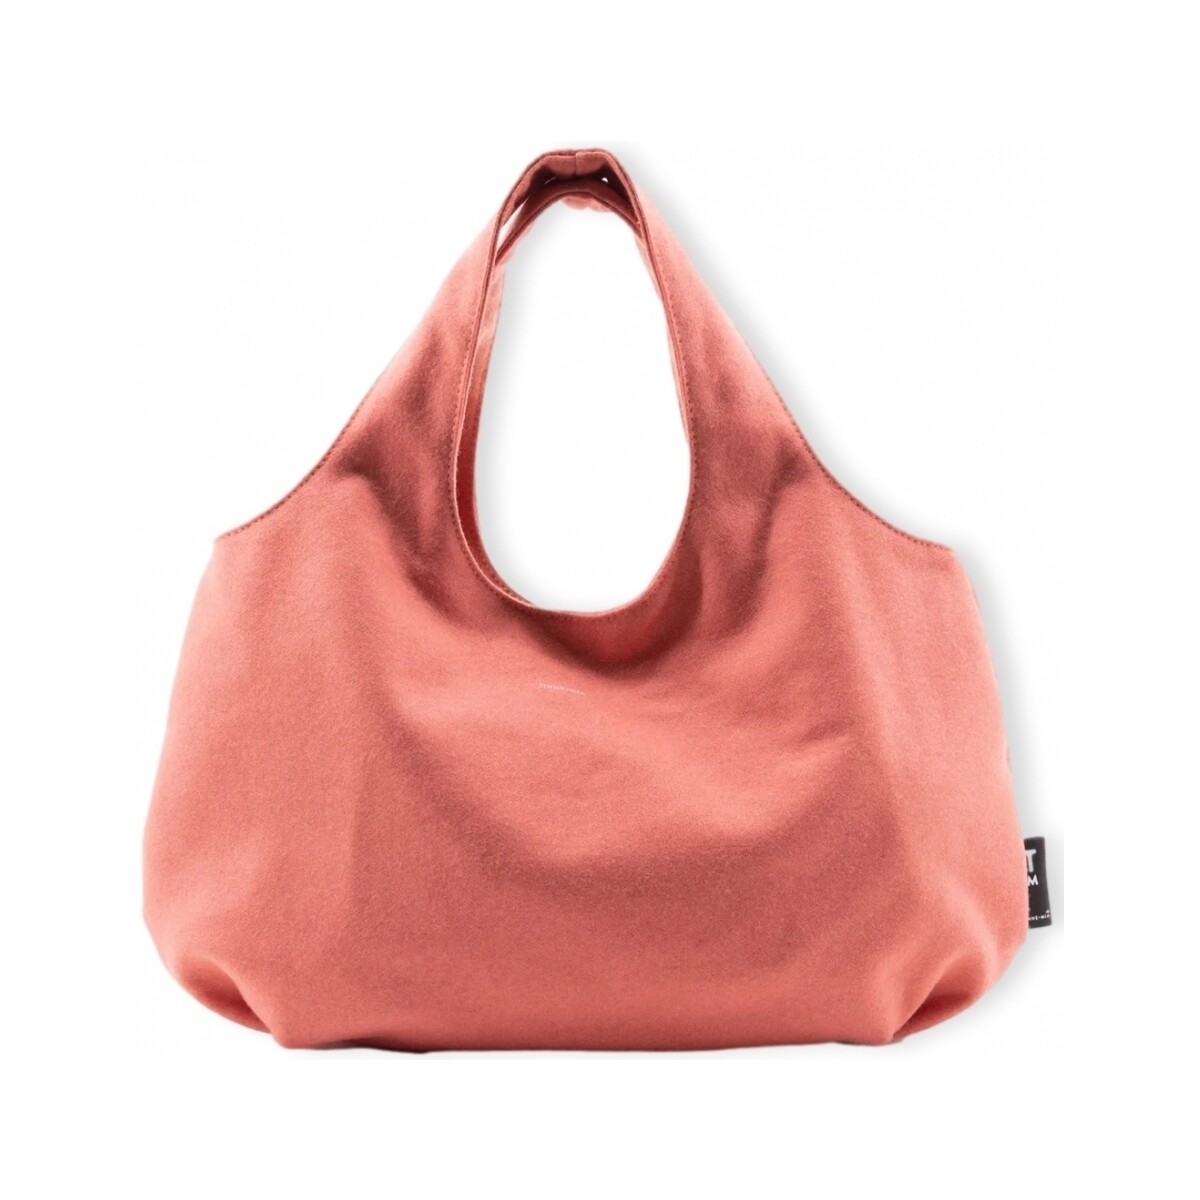 Taška Ženy Náprsní tašky Tinne+Mia TINNE + MIA Mila Bag - Sugar Coral Růžová